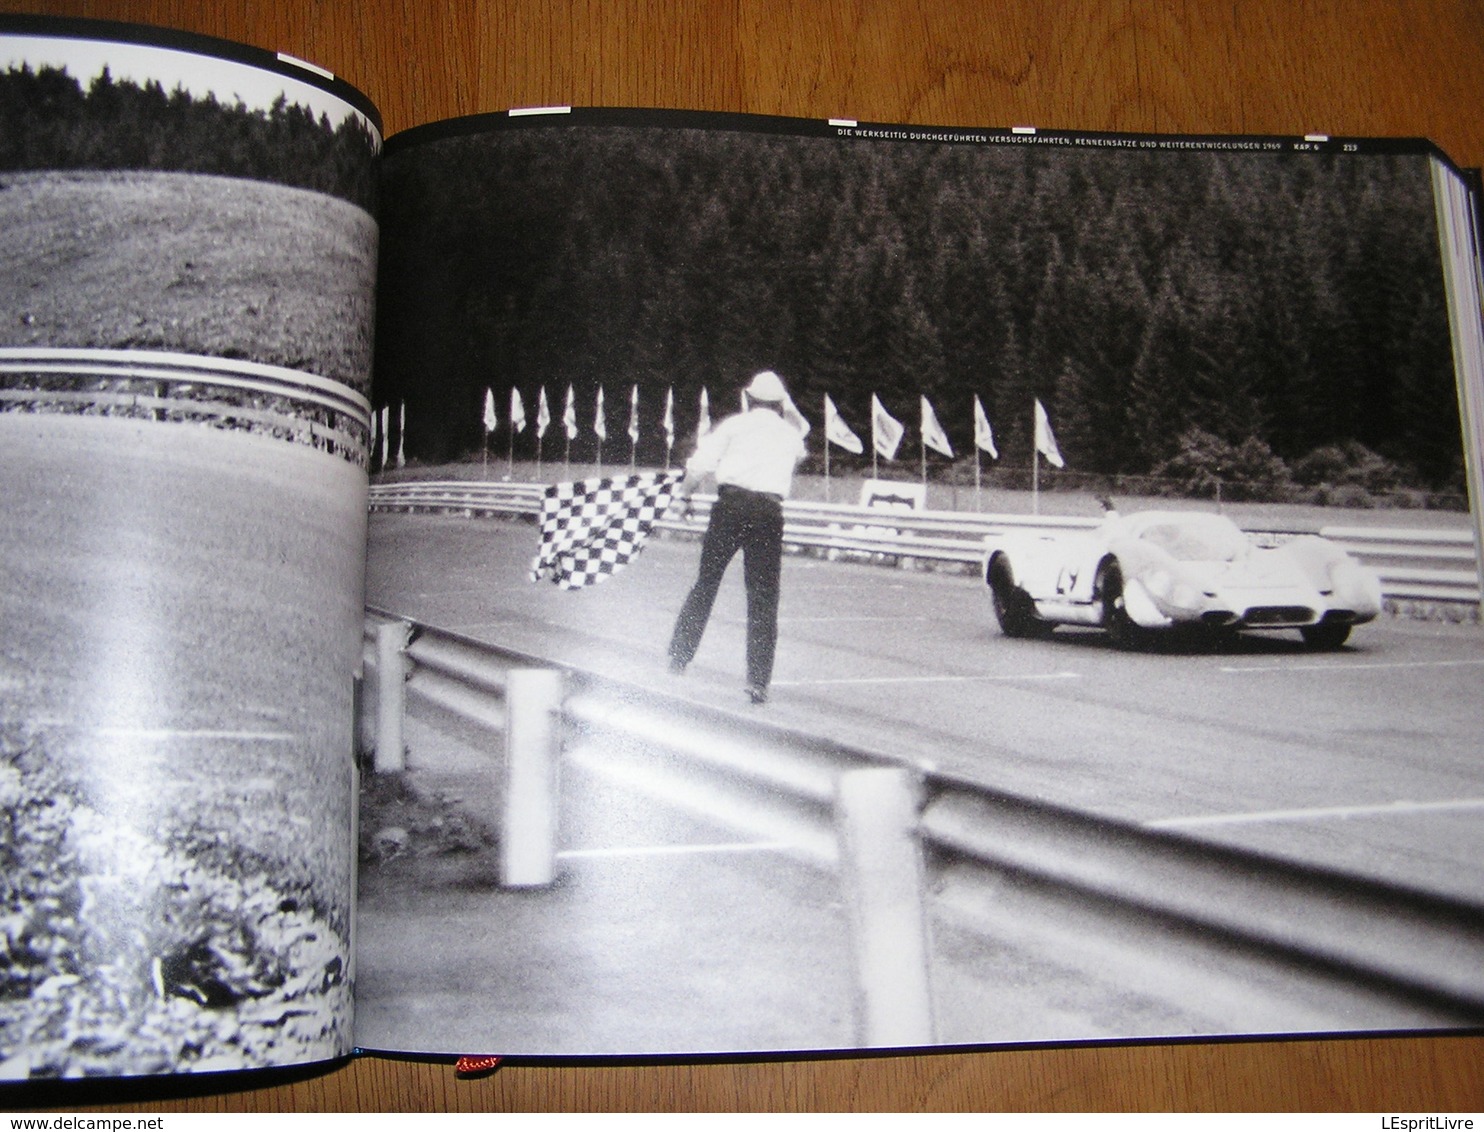 PORSCHE 917 Archiv und Werkverzeichnis 1968 1975 Näher W Spider Racing Cars Automobile 24 Heures Autorennen Course Auto